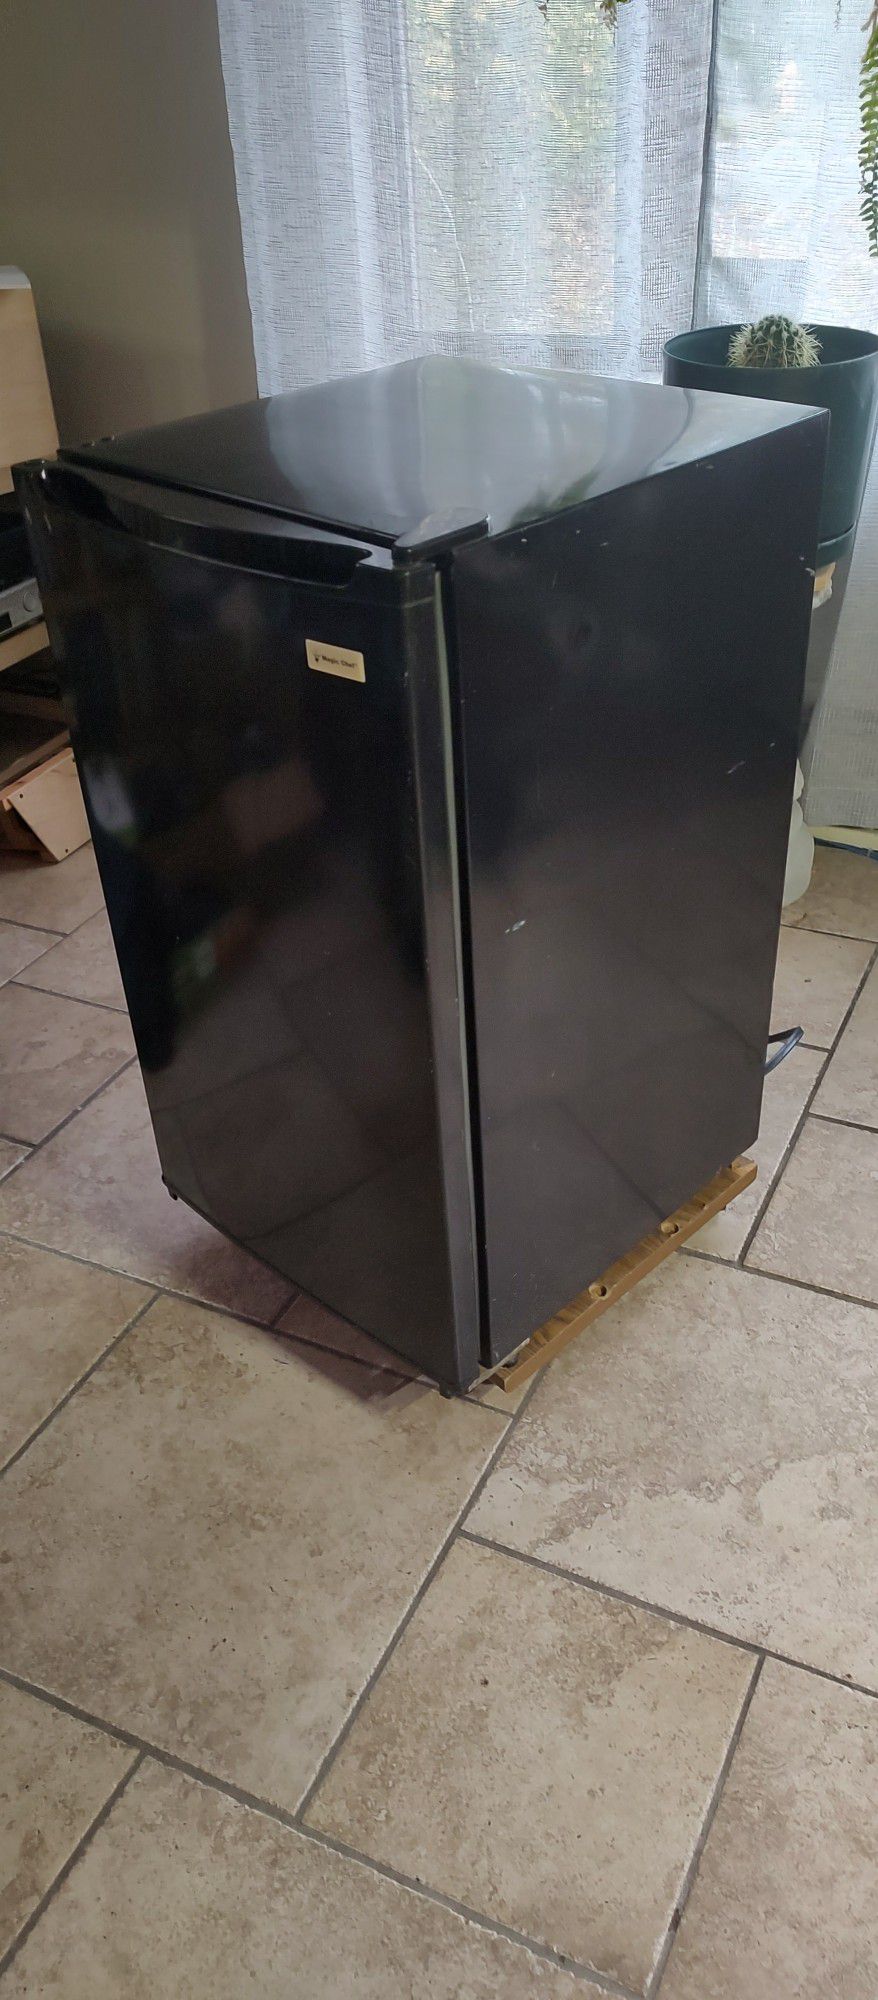 Refrigerator Magic Chef half sized 4.4 cubic feet